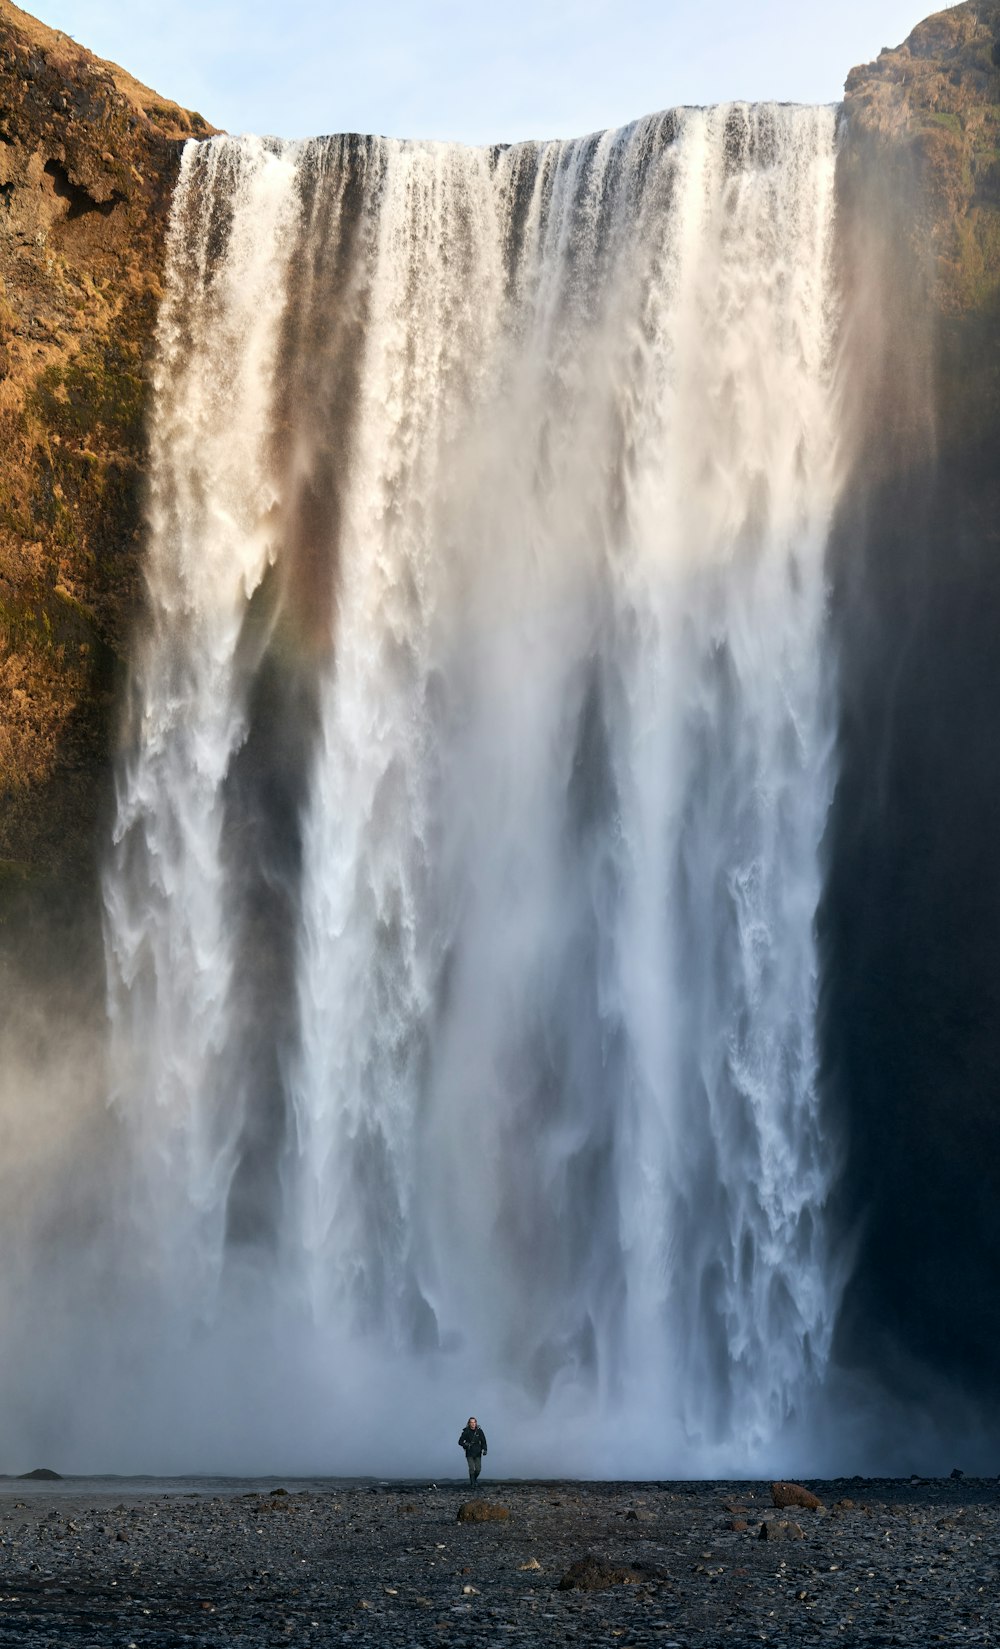 Wasserfall auf Brachfläche